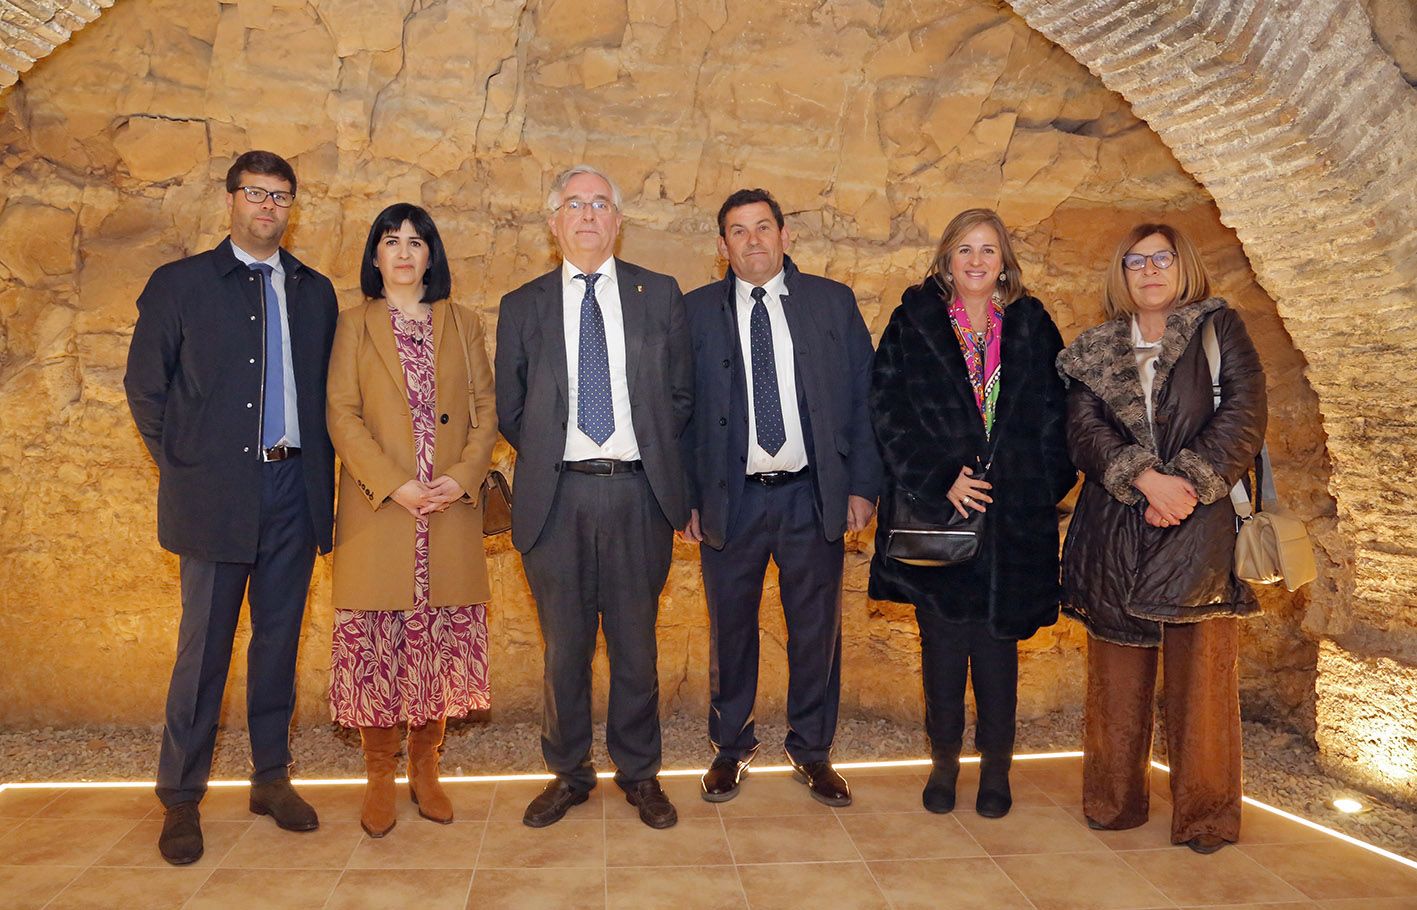 El CRDO Campo de Borja presenta Garnachas Históricas Project, una pionera iniciativa a nivel nacional para conservar los viñedos viejos